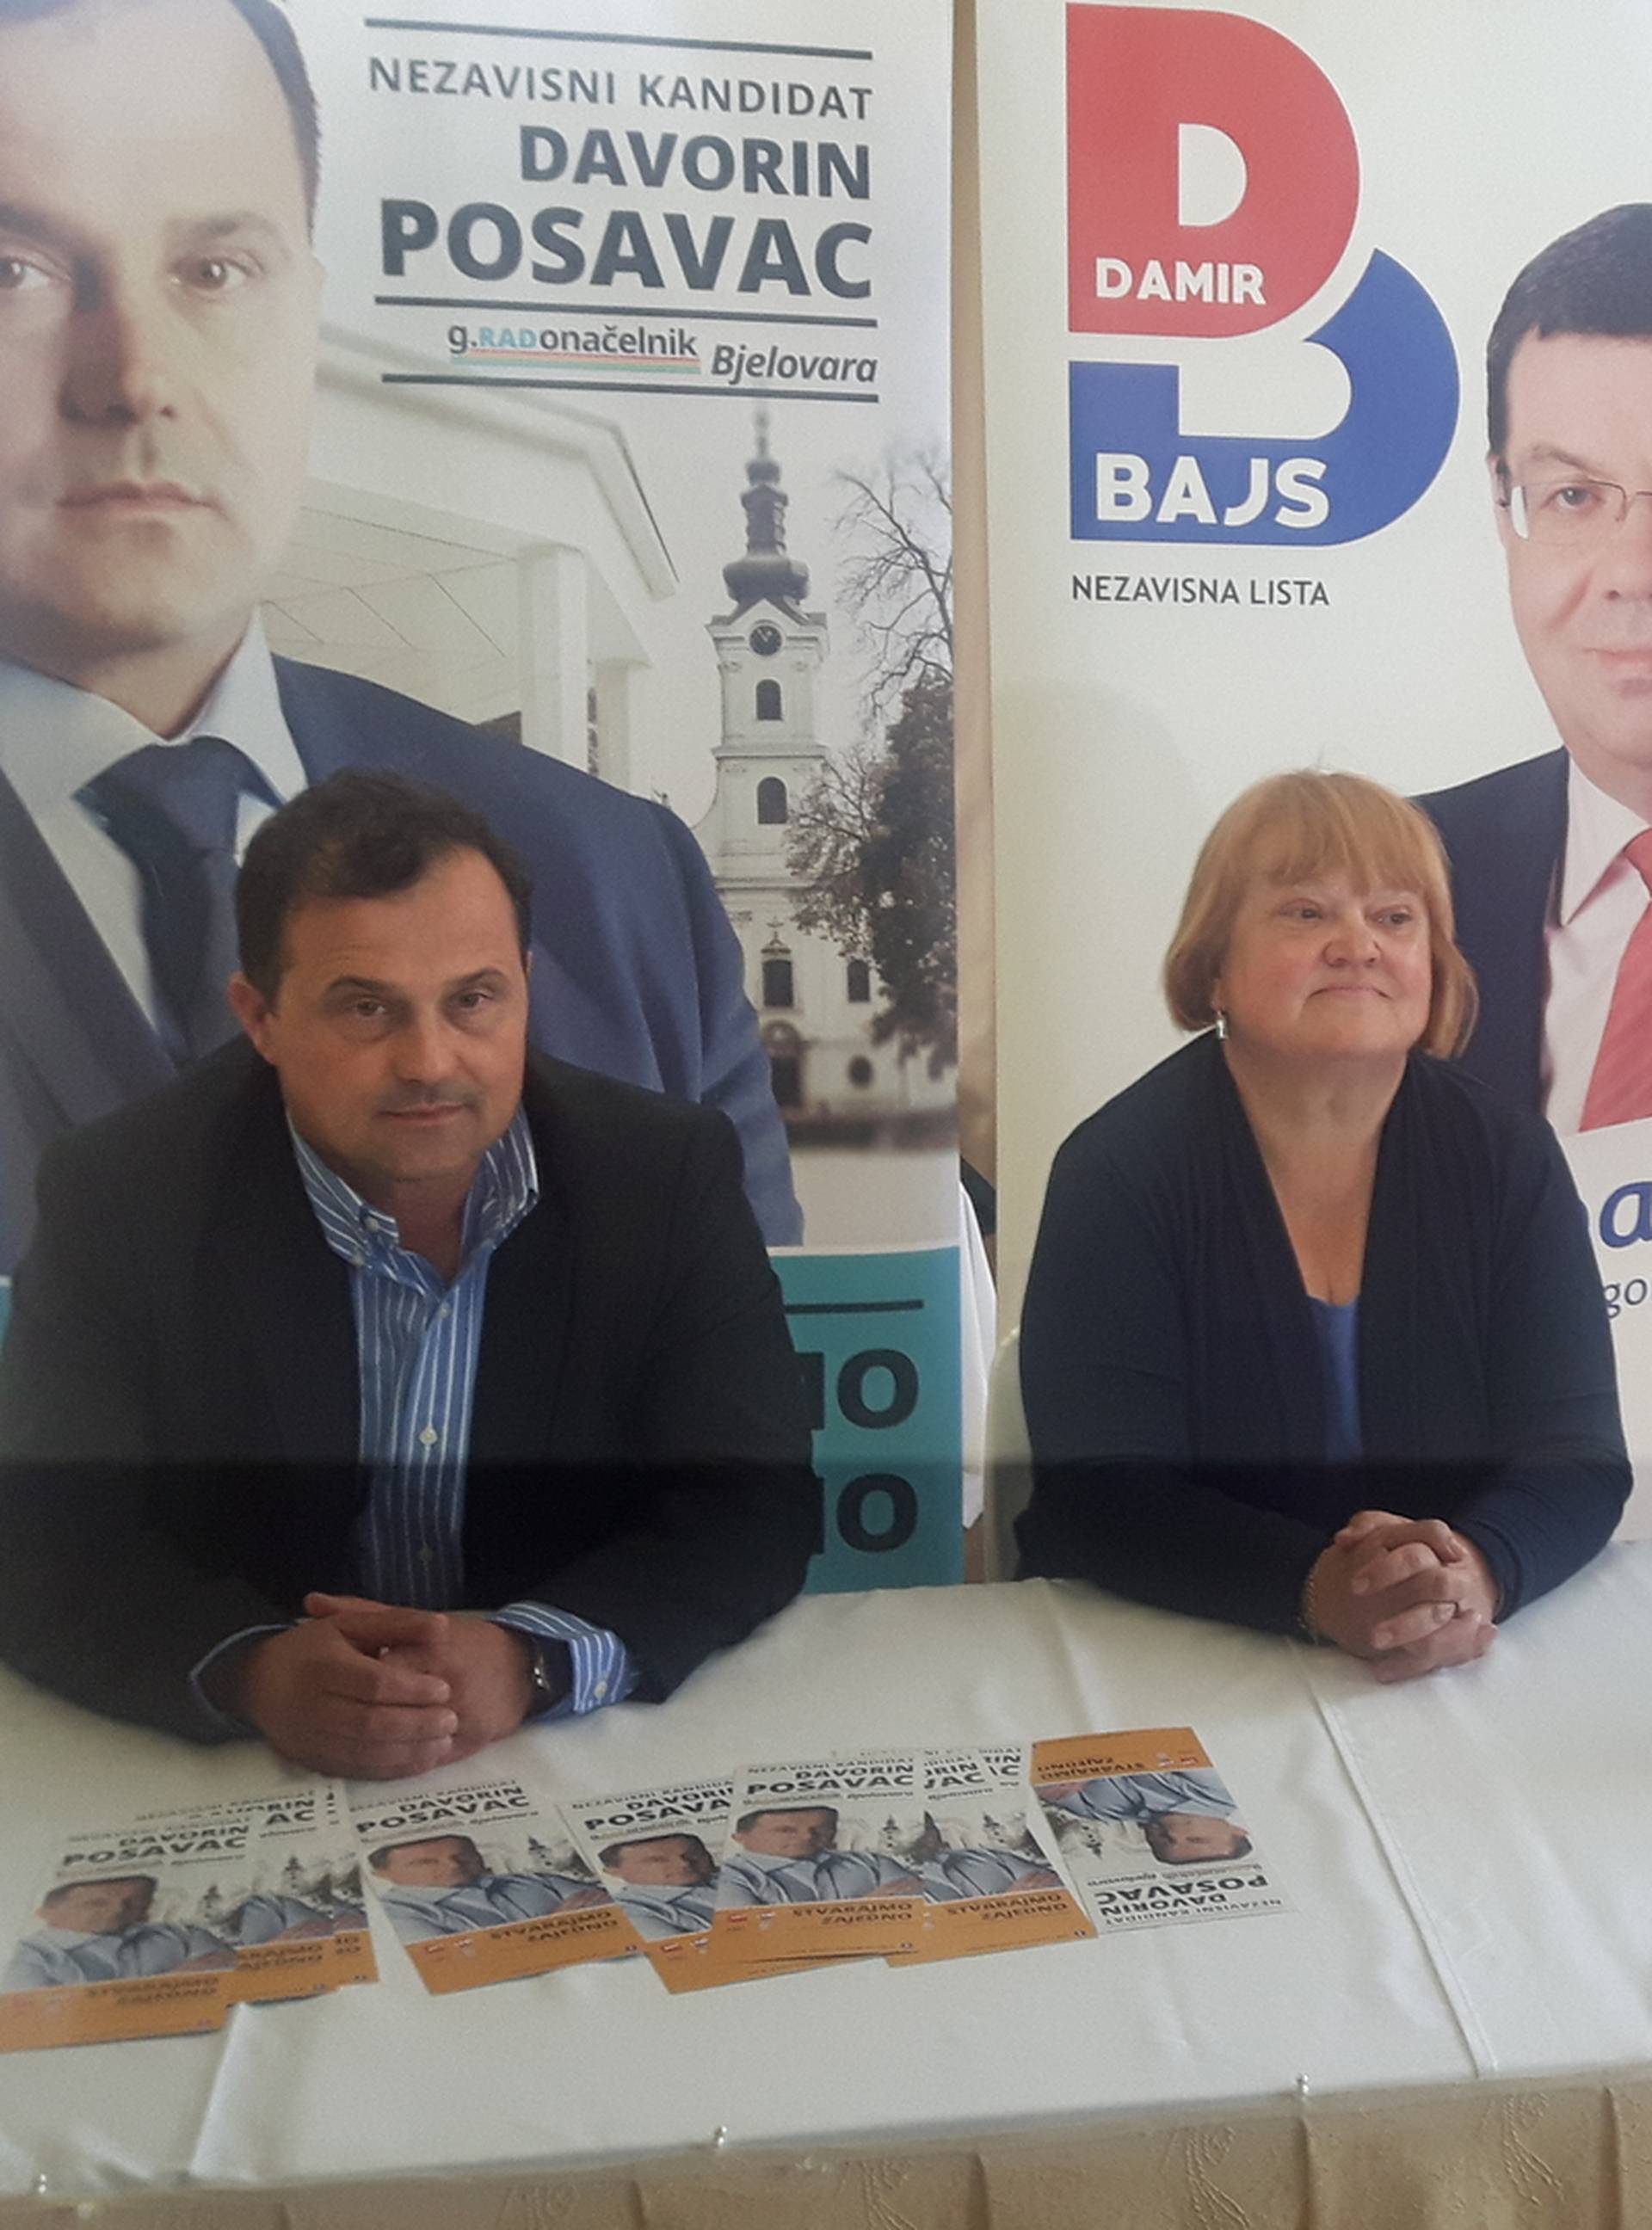 Mrak Taritaš u Bjelovaru: Došla dati podršku Bajsu i Posavcu